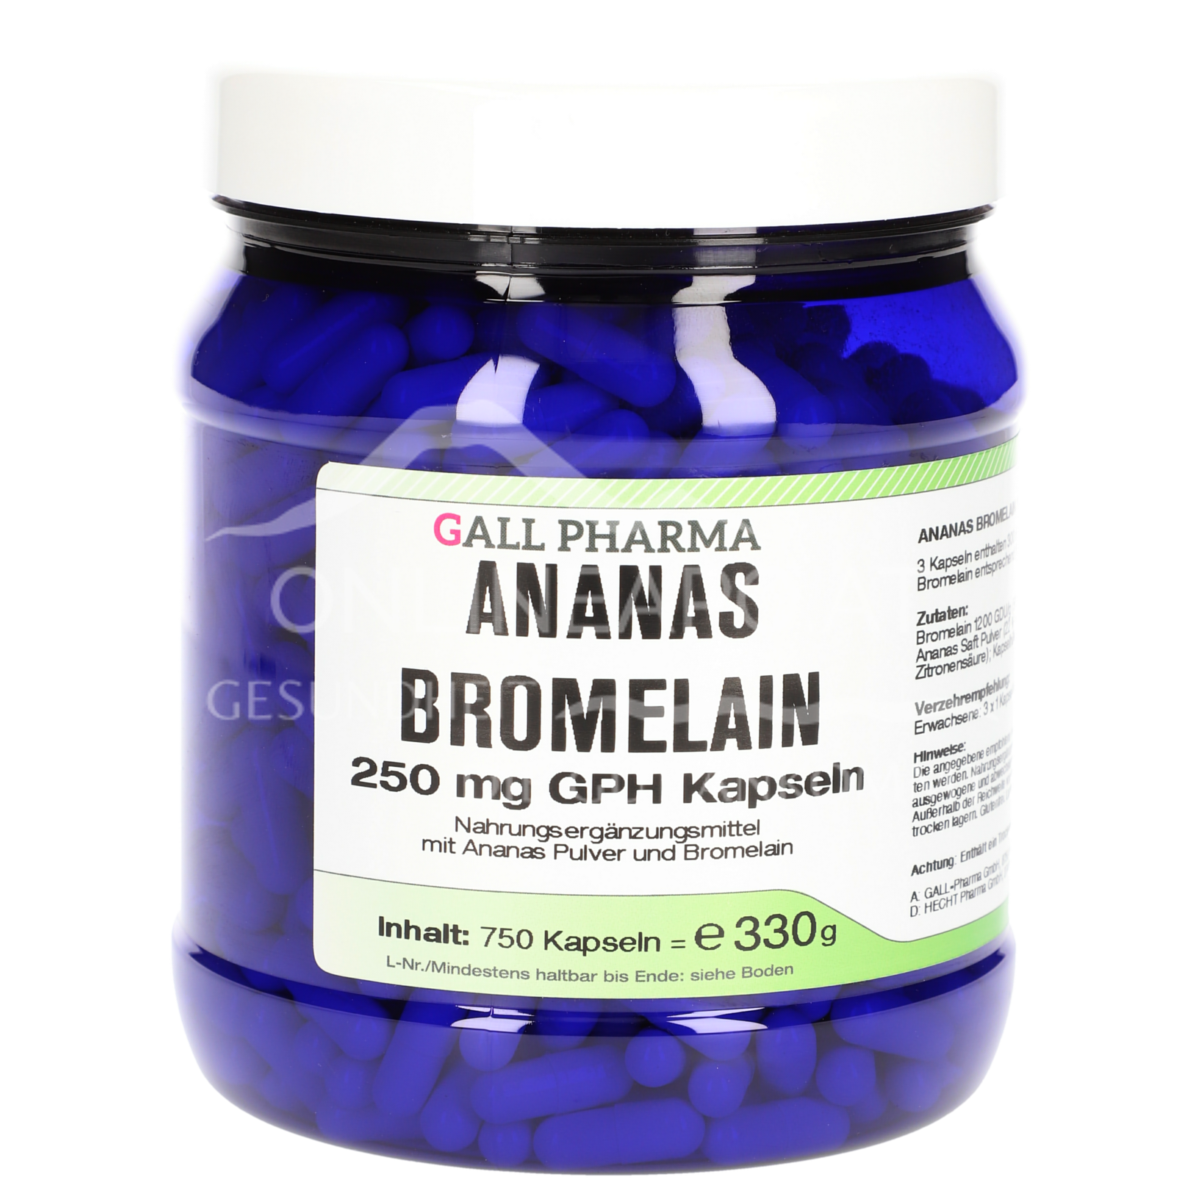 Gall Pharma Ananas Bromelain 250 mg Kapseln